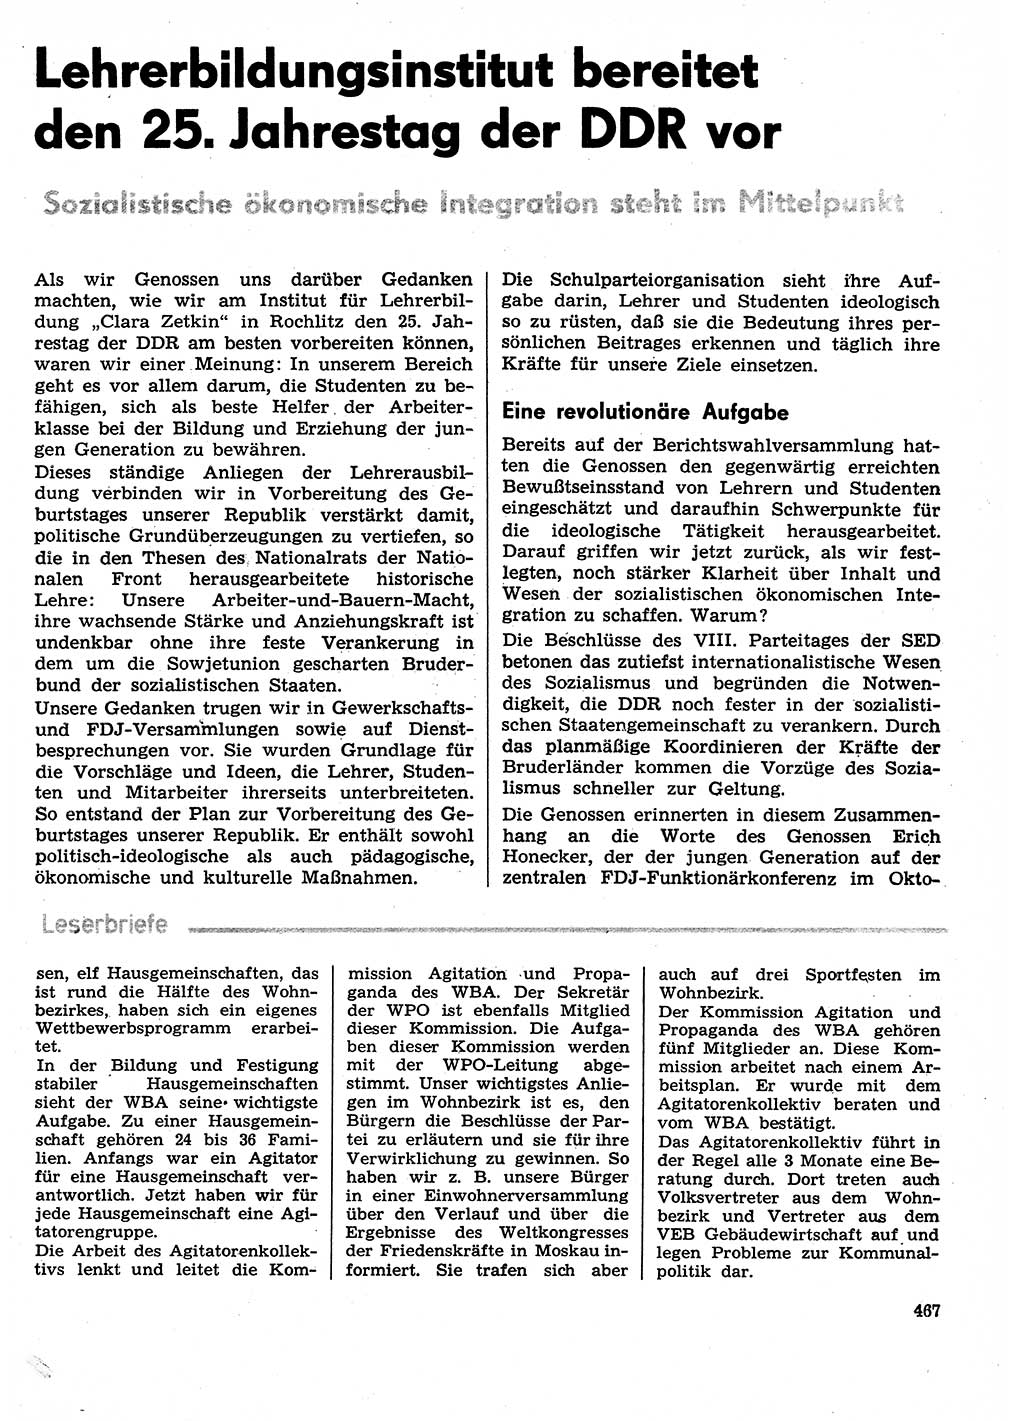 Neuer Weg (NW), Organ des Zentralkomitees (ZK) der SED (Sozialistische Einheitspartei Deutschlands) für Fragen des Parteilebens, 29. Jahrgang [Deutsche Demokratische Republik (DDR)] 1974, Seite 467 (NW ZK SED DDR 1974, S. 467)